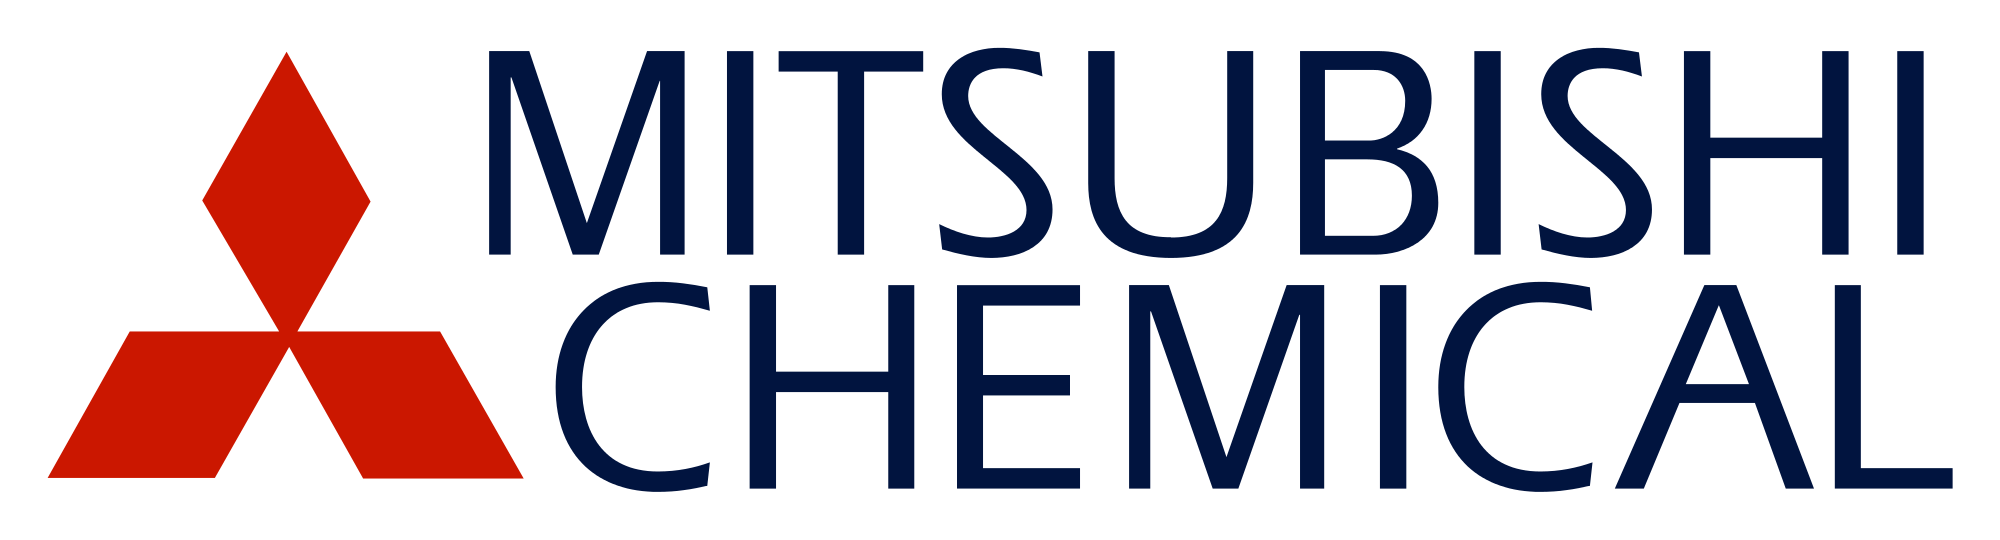 Chemcel Logo - Mitsubishi Chemical Logo.svg